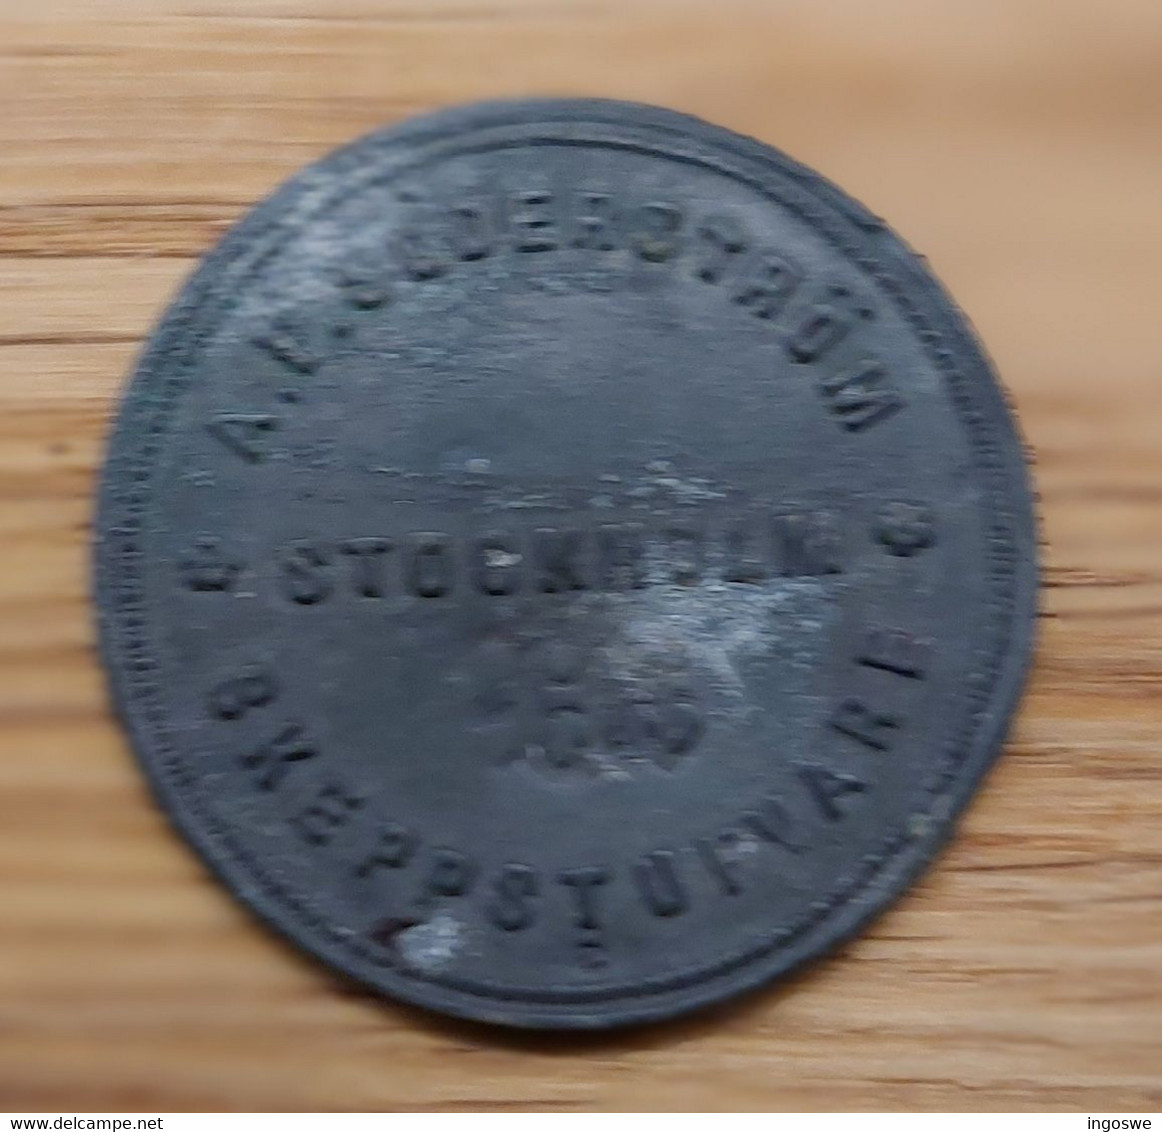 Sweden -  Stockholm - Old Token From Söderström Skeppsstuvare - Not Listed In Stockholmspolletter! About 1880-90 - Professionals / Firms